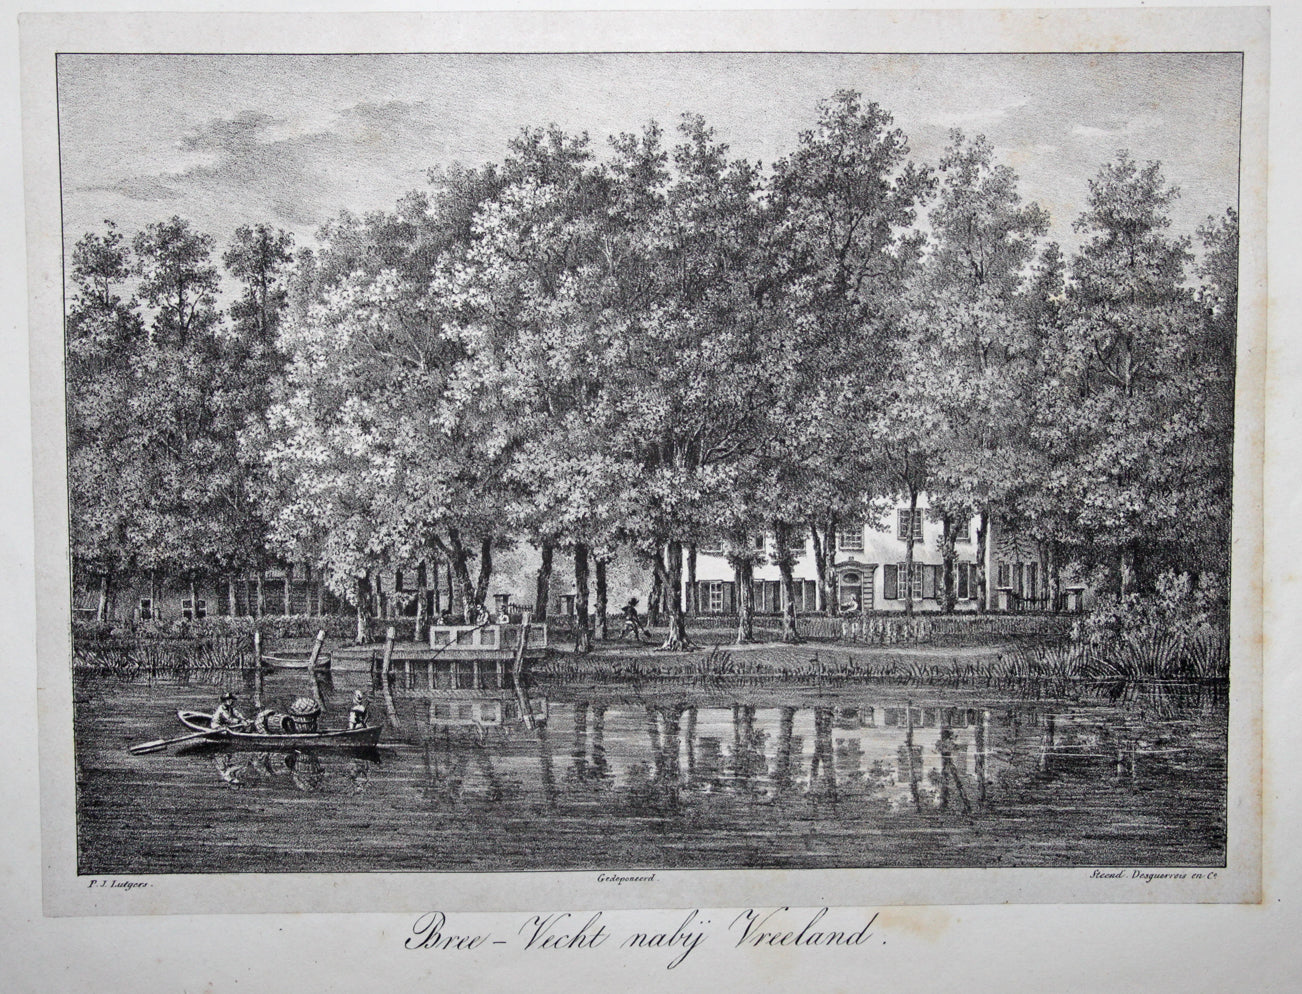 VREELAND Breevecht - Lutgers / Desguerrois & Co - 1836